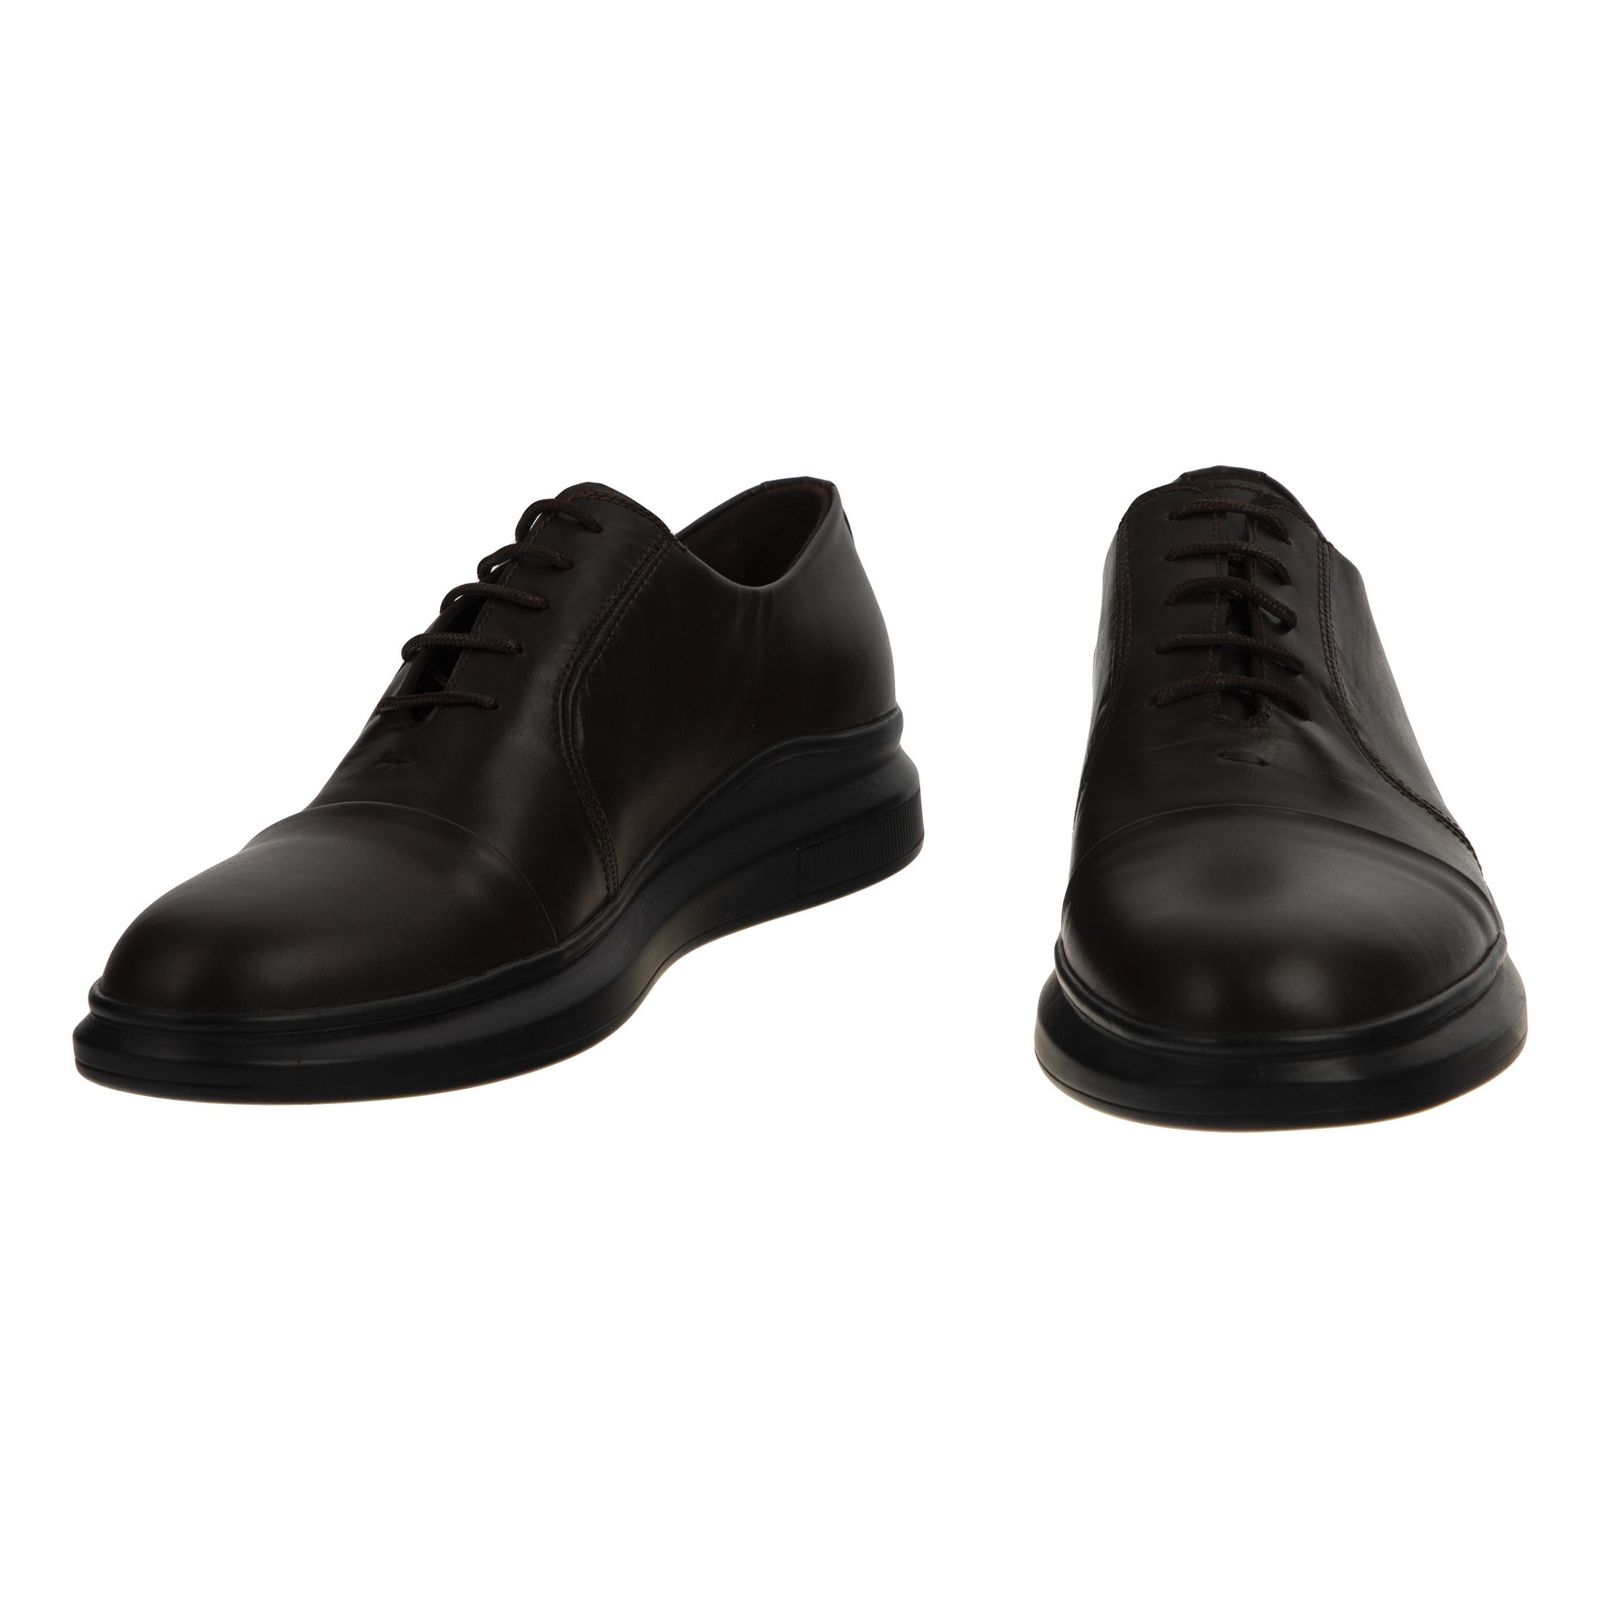 کفش مردانه ریمکس مدل 7230A503-104 - قهوه ای - 4